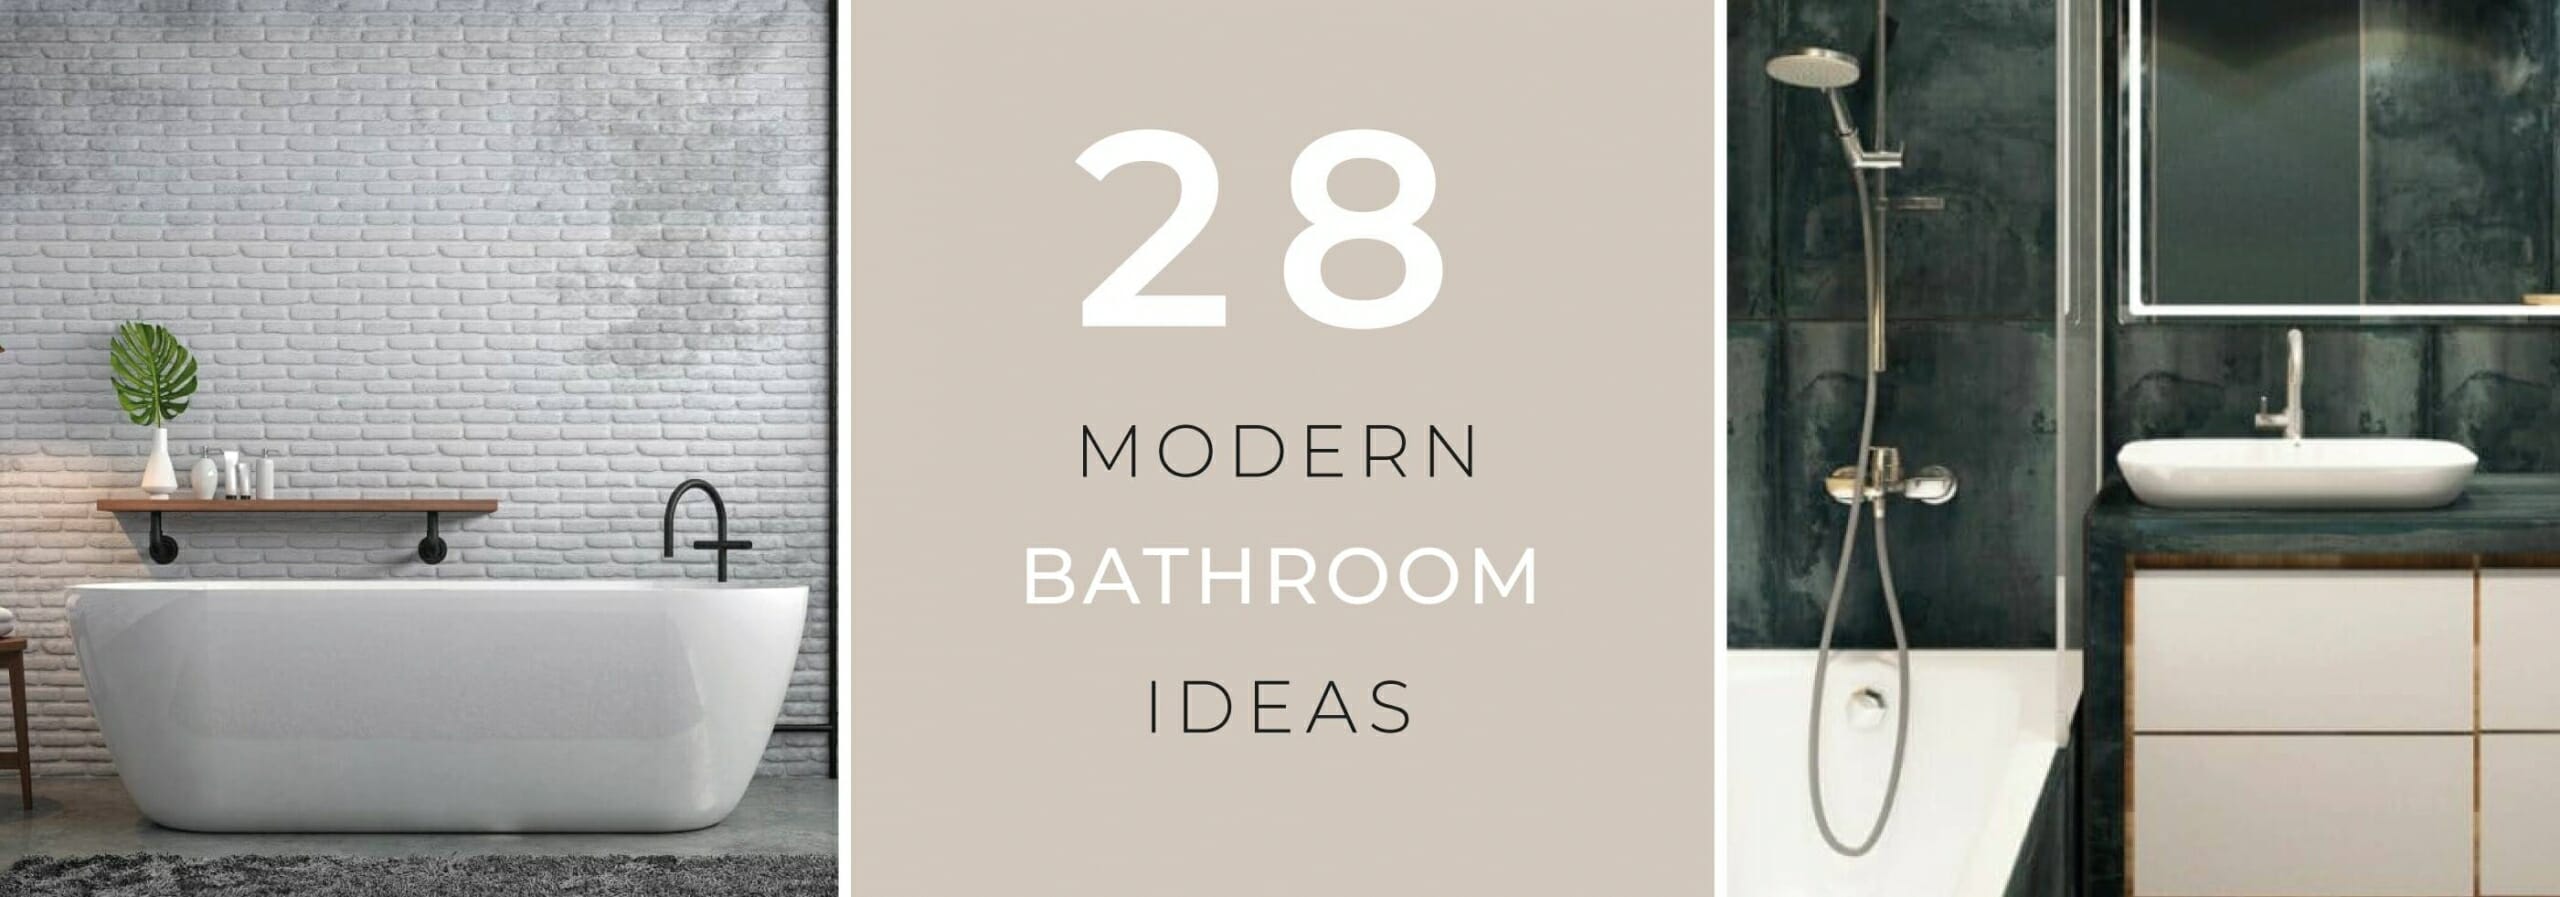 Stylish Modern Bathroom Ideas Big Bathroom Shop